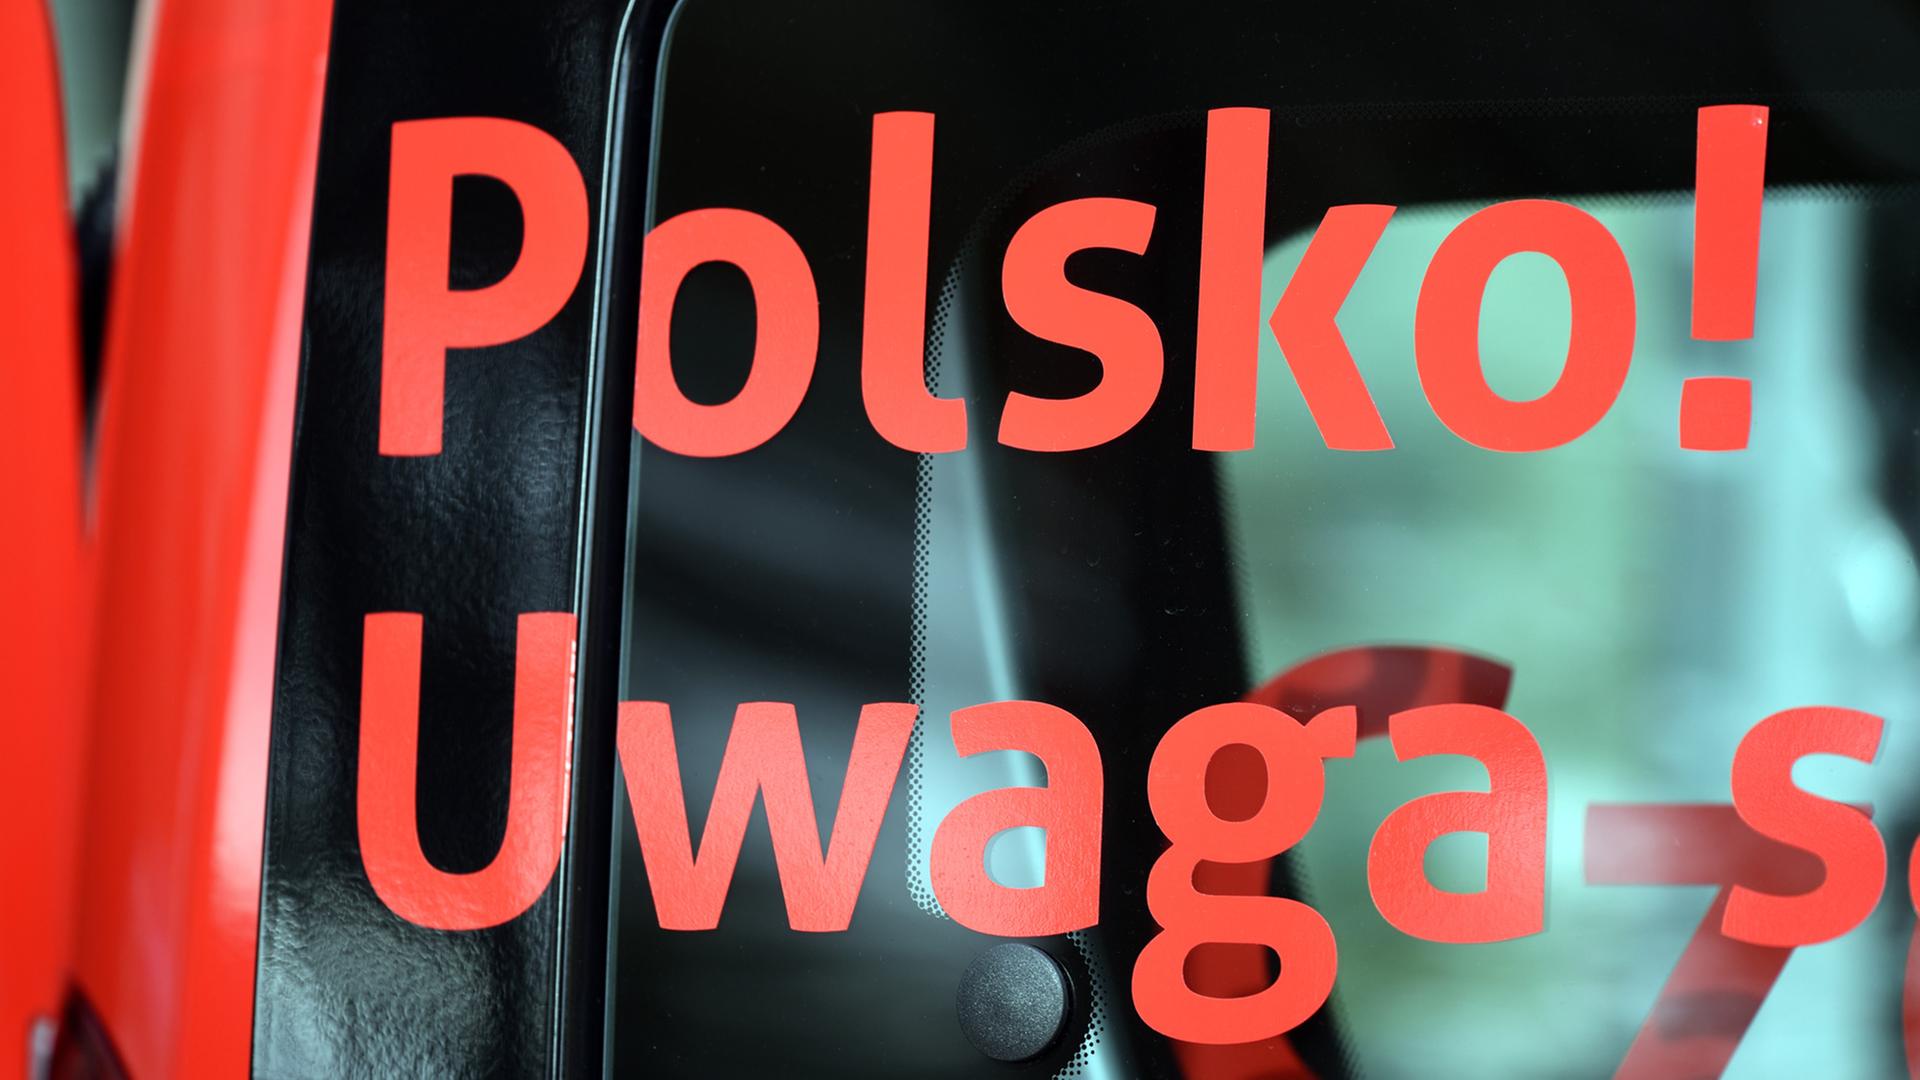 Achtung Polnisch! - Das Deutsche Polen Institut startet mit einer Werbeaktion in Potsdam seine Tour durch deutsche Schulen, um für das Erlernen der polnischen Sprache zu werben; Aufnahme vom September 2015